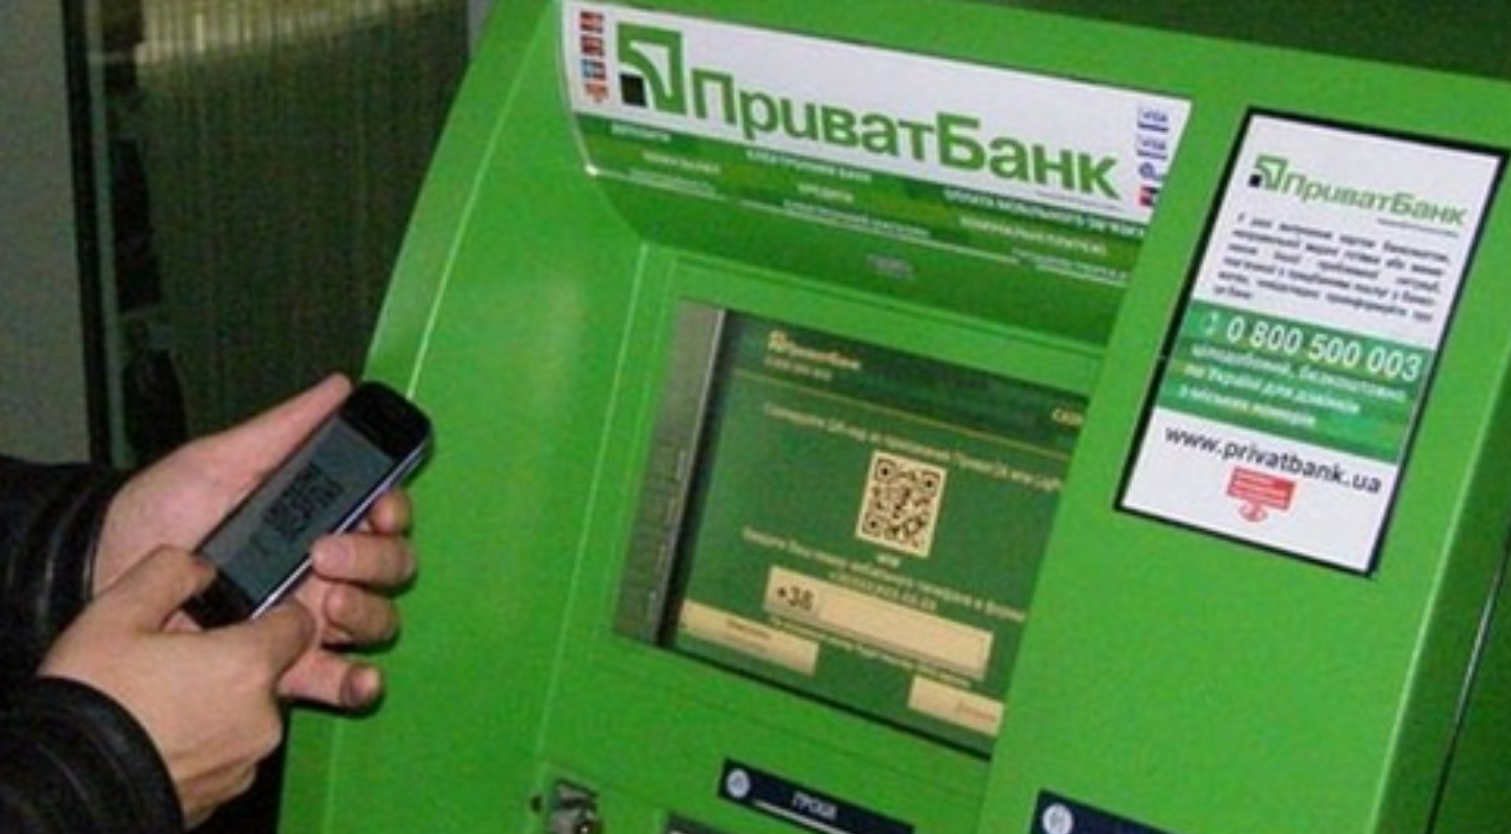 Используют реальный номер банка: мошенники придумали новый способ обманывать клиентов ПриватБанка - фото 1